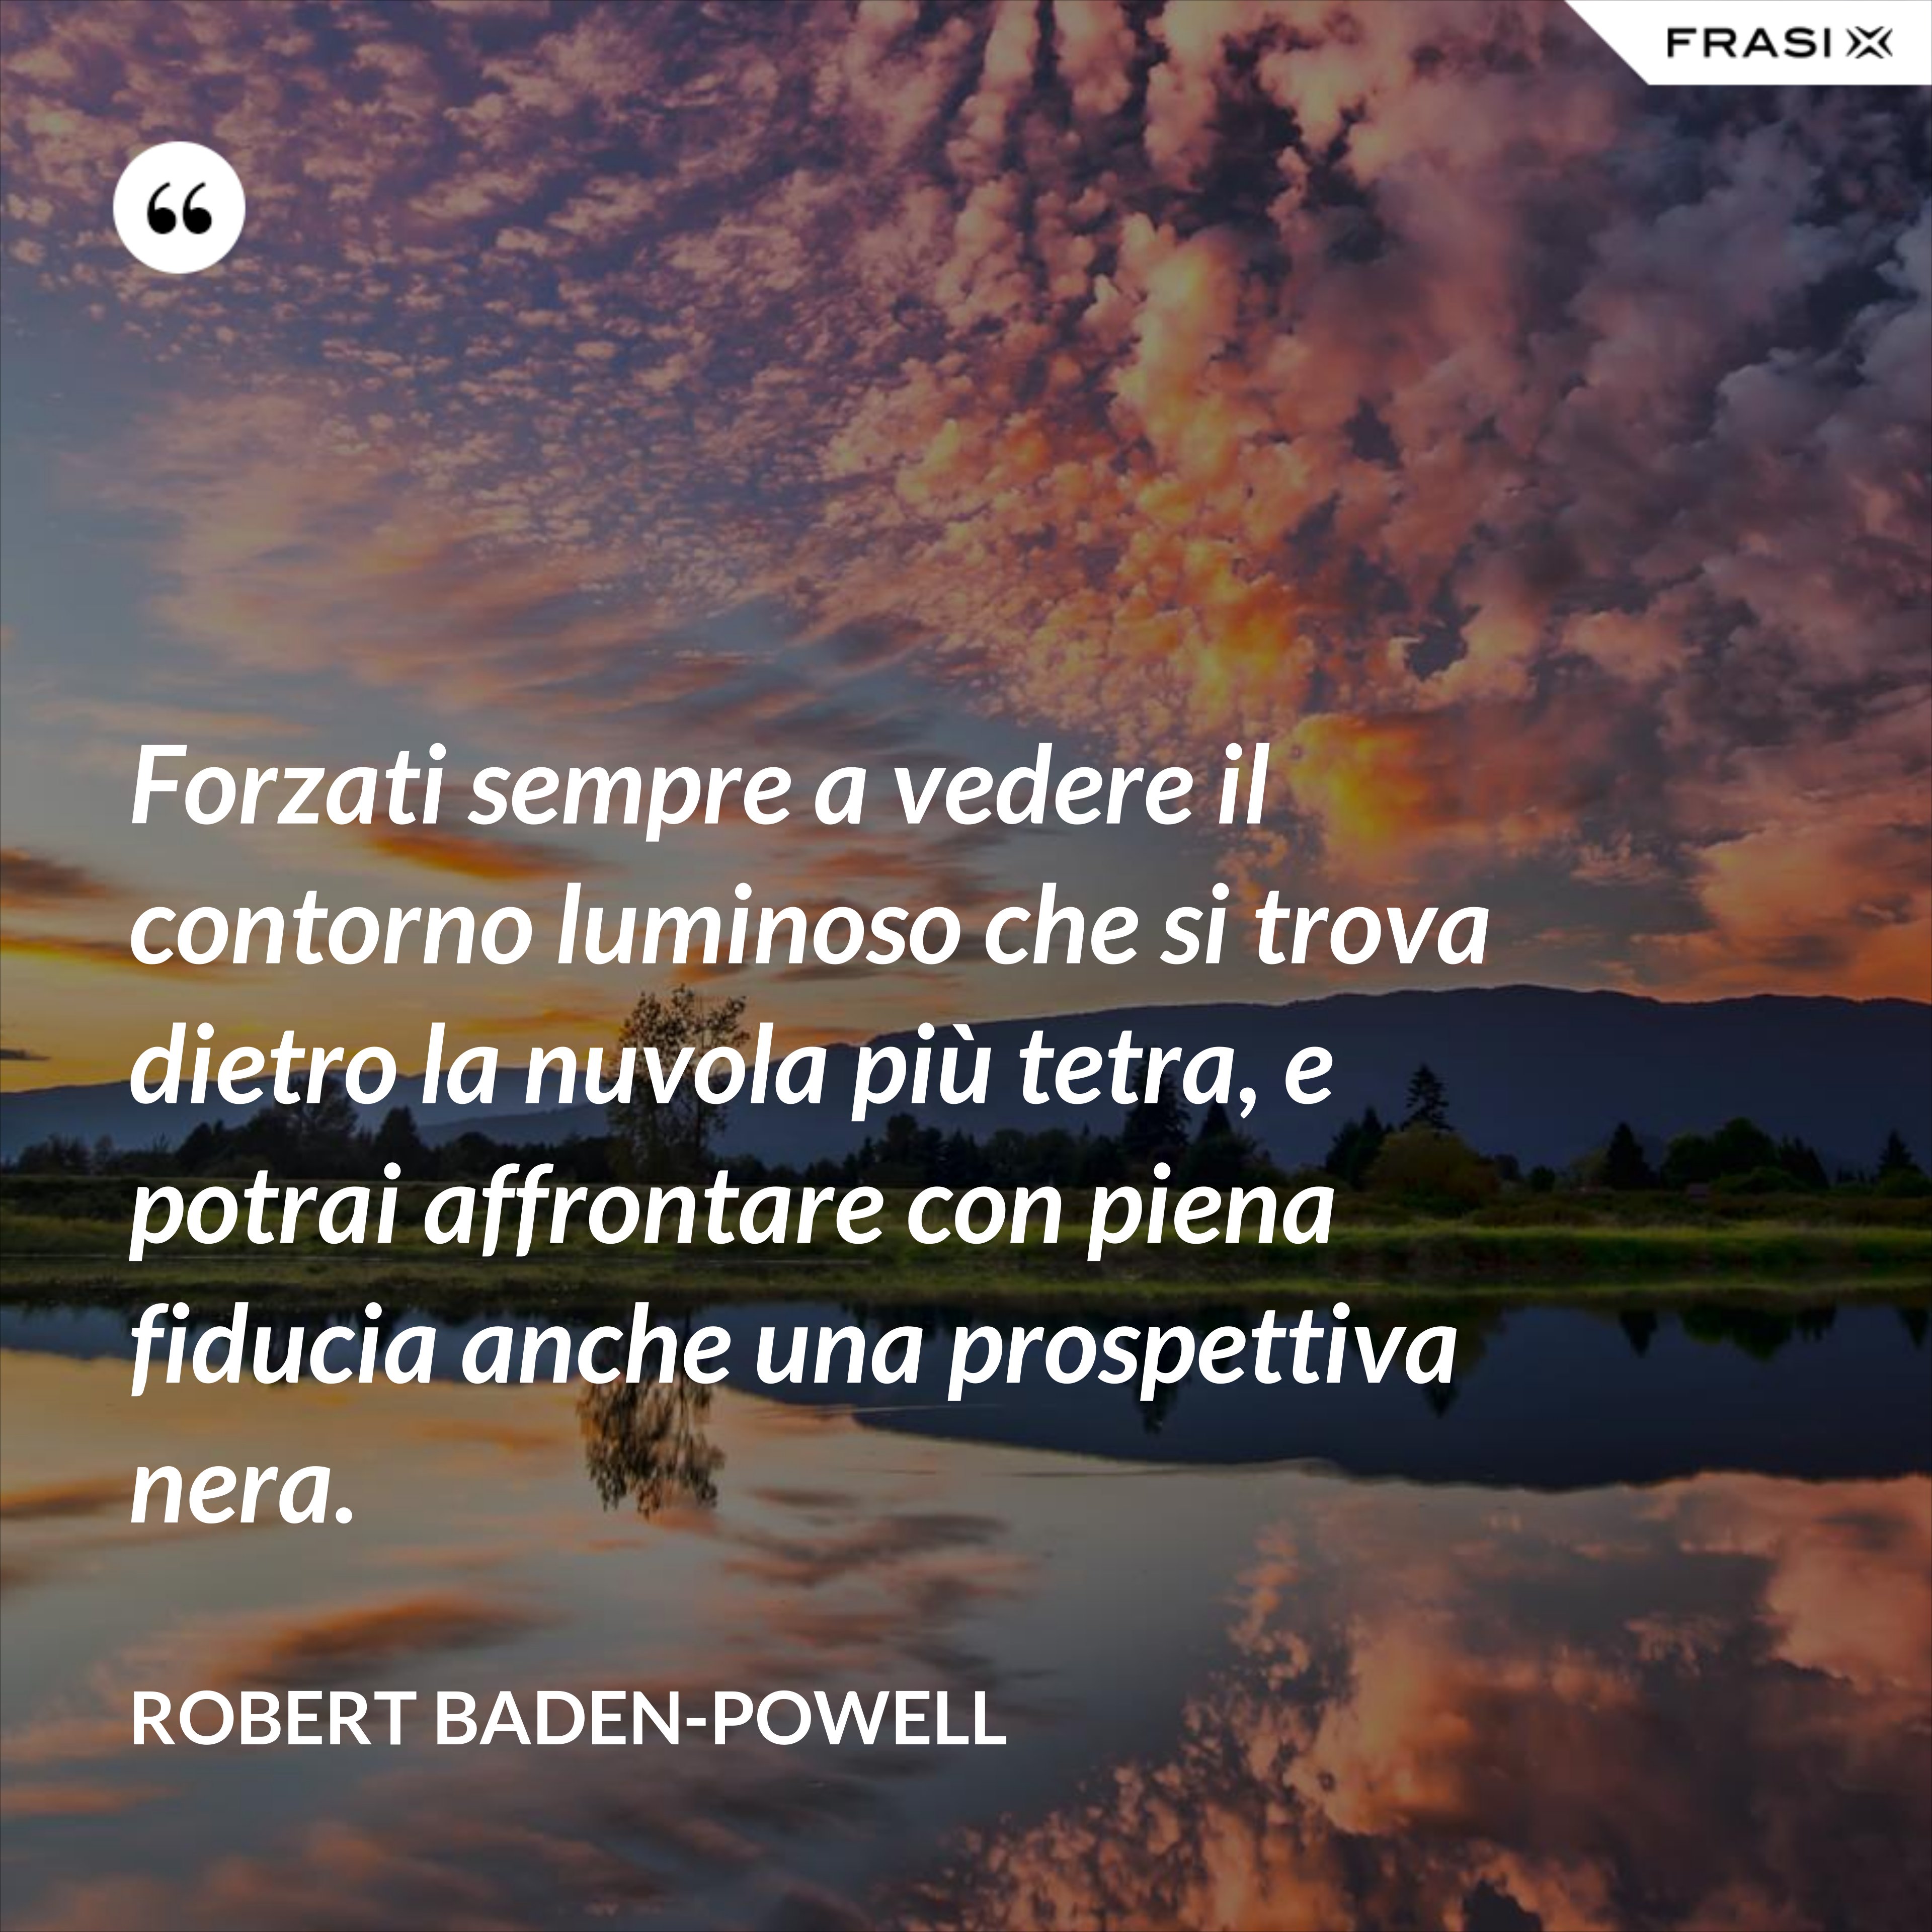 Forzati sempre a vedere il contorno luminoso che si trova dietro la nuvola più tetra, e potrai affrontare con piena fiducia anche una prospettiva nera. - Robert Baden-Powell